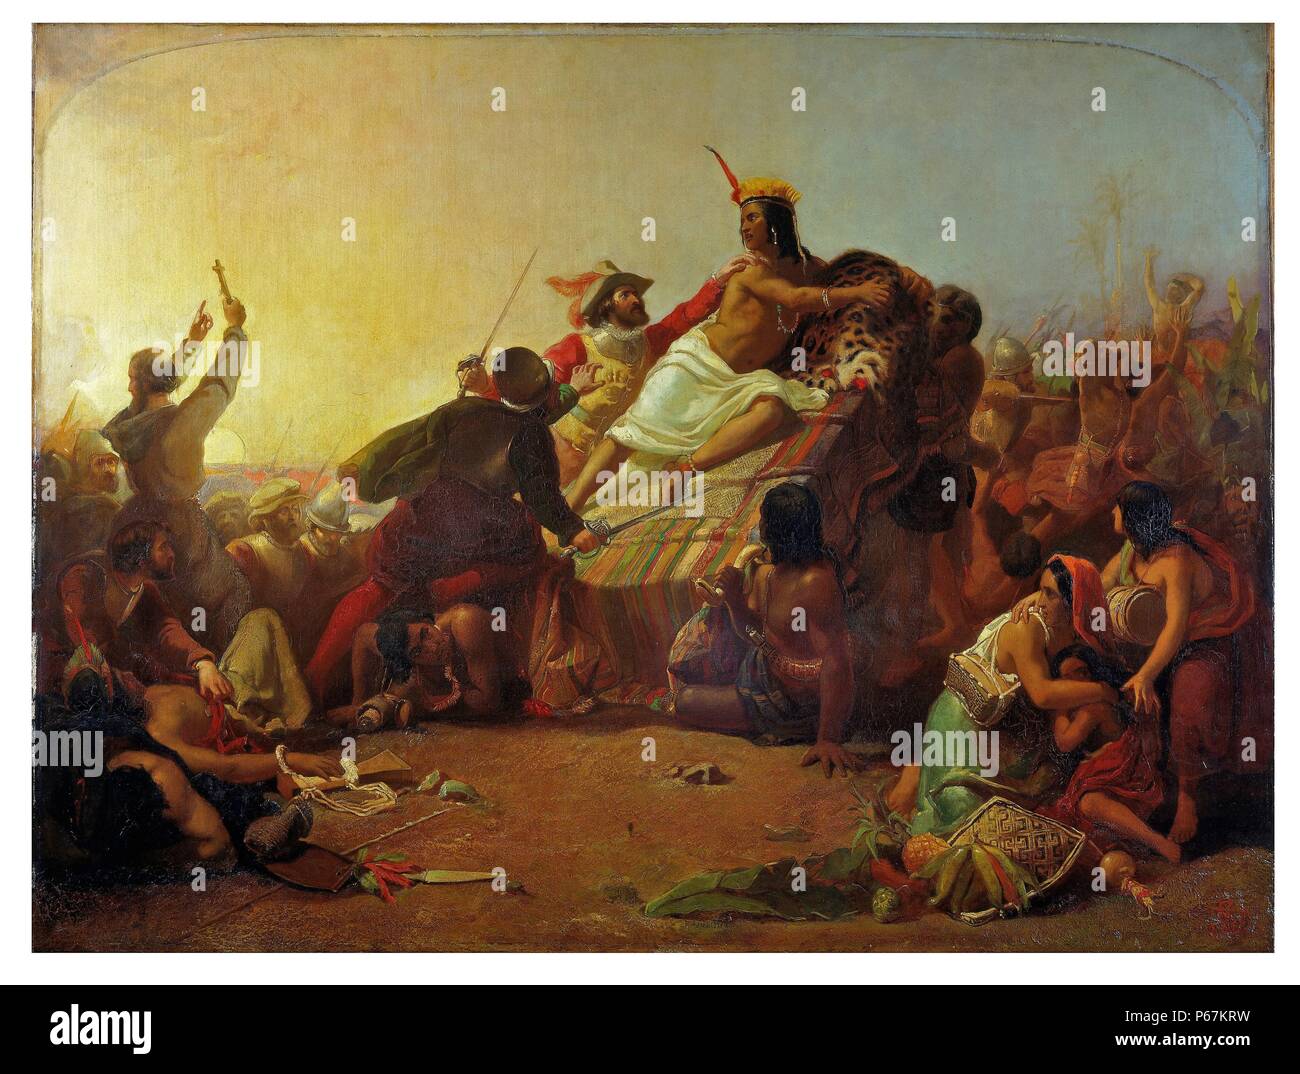 Peinture 'inclinée Pizarro saisissant l'Inca du Pérou' de John Everett Millais (1829-1896) peintre et illustrateur Anglais qui fut l'un des fondateurs de la Fraternité préraphaélite. Datée 1850 Banque D'Images